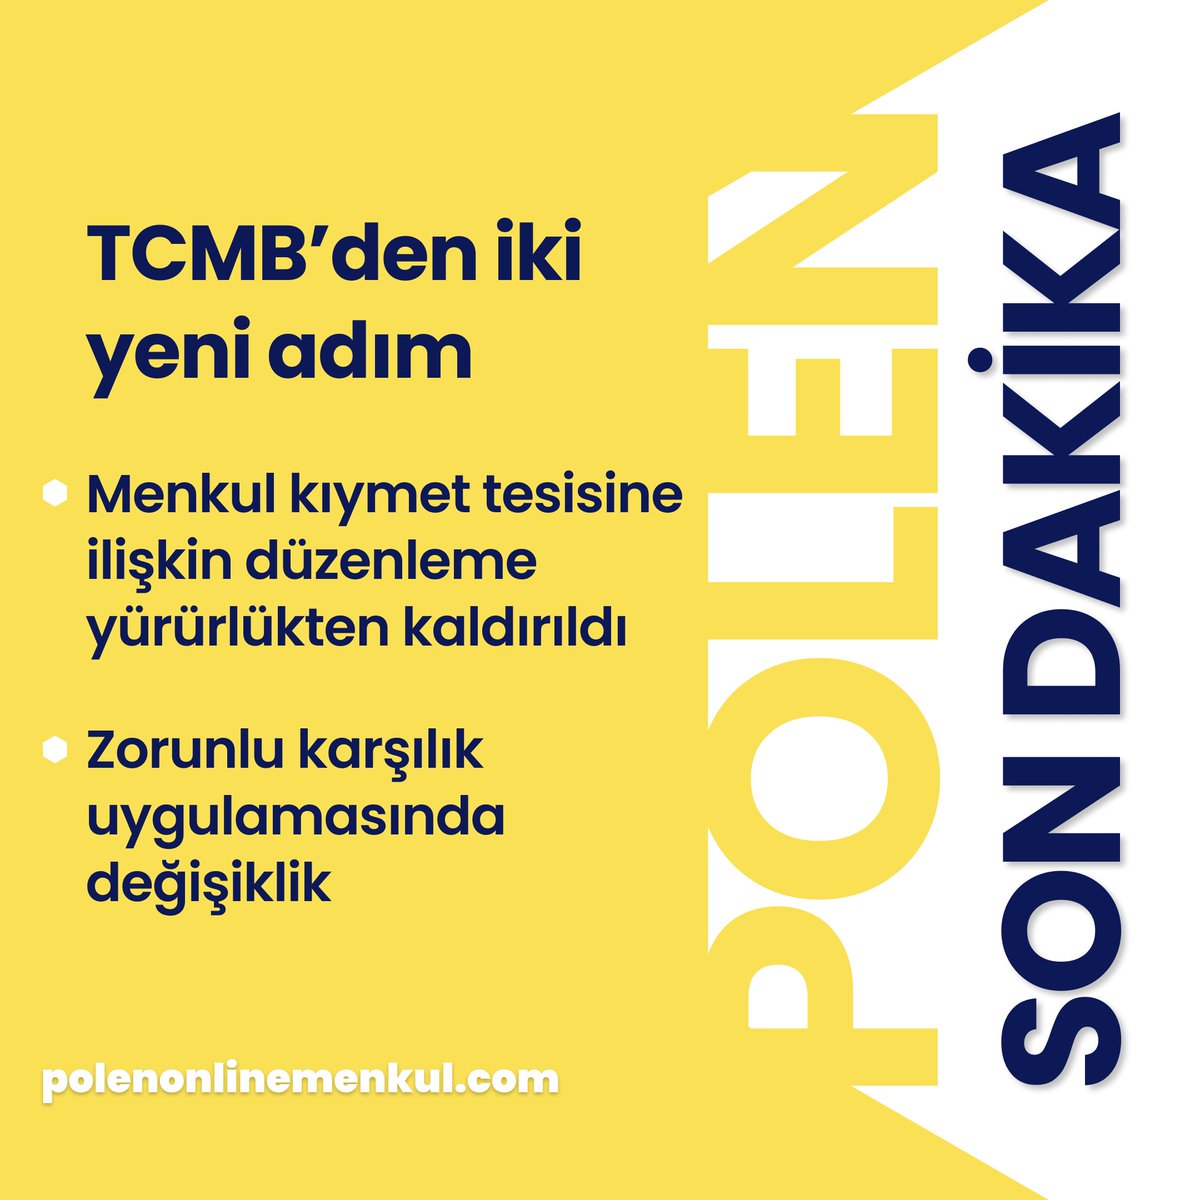 Daha fazlası için takipte kalın!

#borsa #borsaistanbul #polen #yatirim #hisse #merkezbankasi #turkiye #istanbul #abd #nasdaq #bist100 #finans #kesfet #gundem #bugun